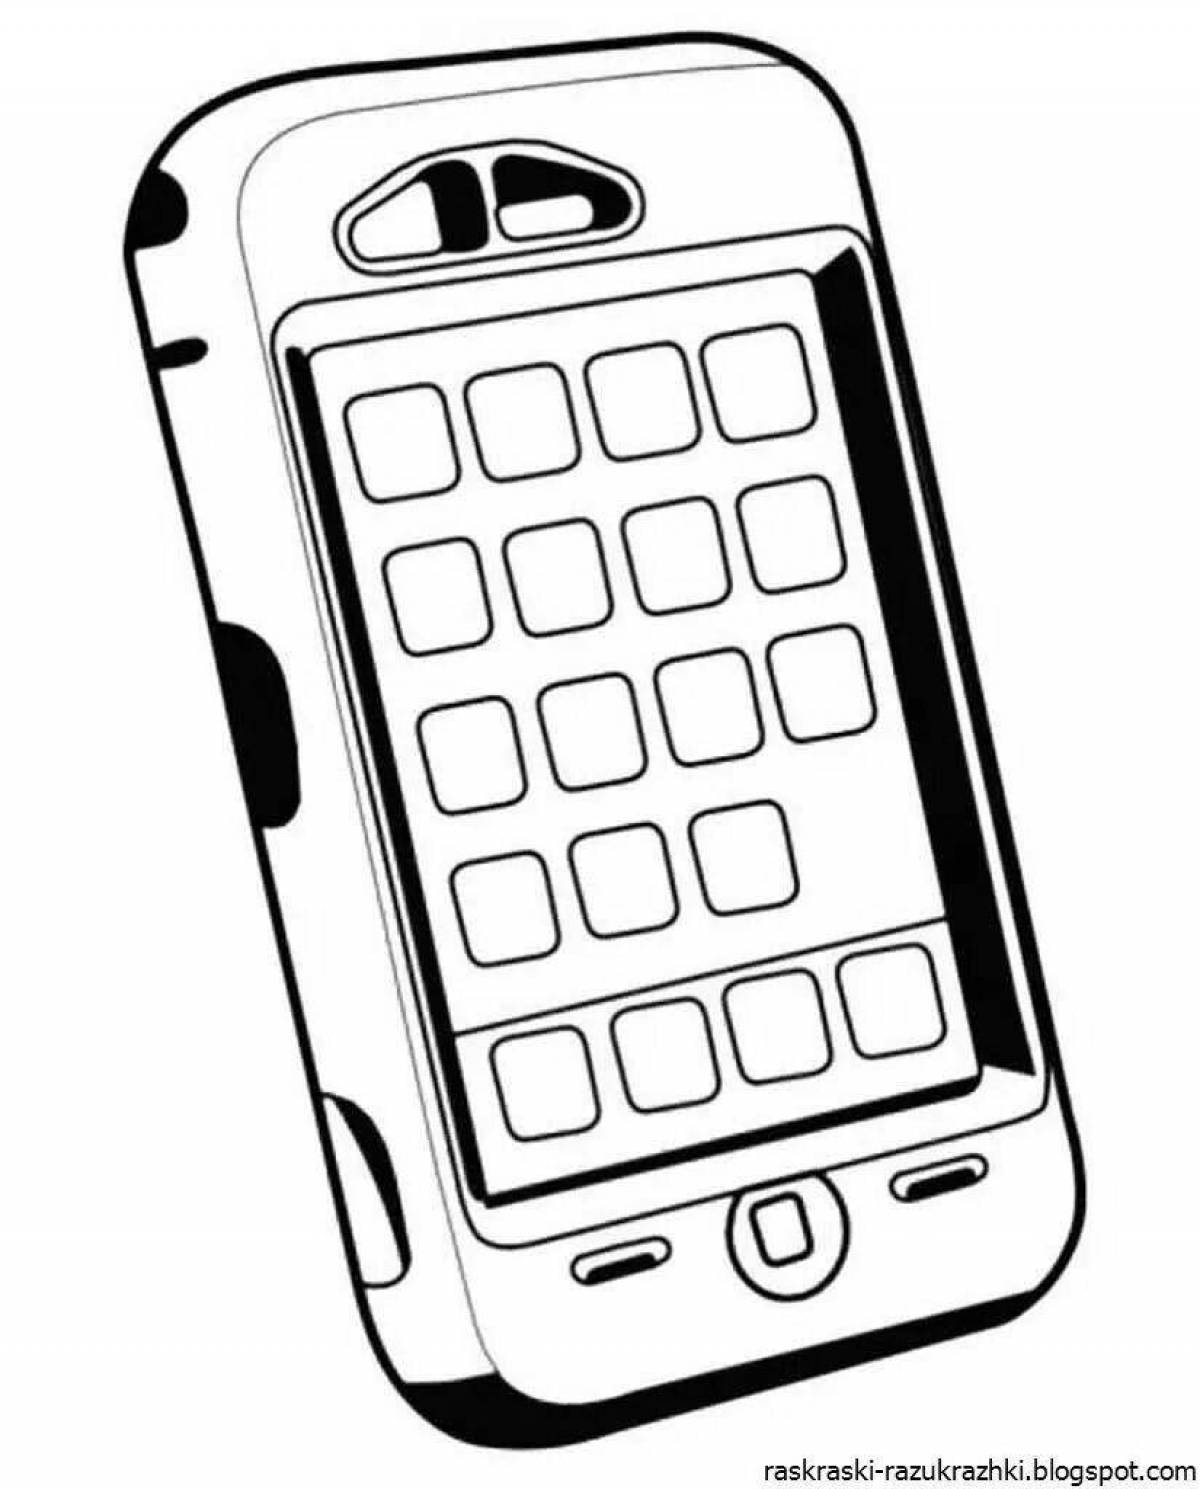 Привлекательная страница раскраски телефона android